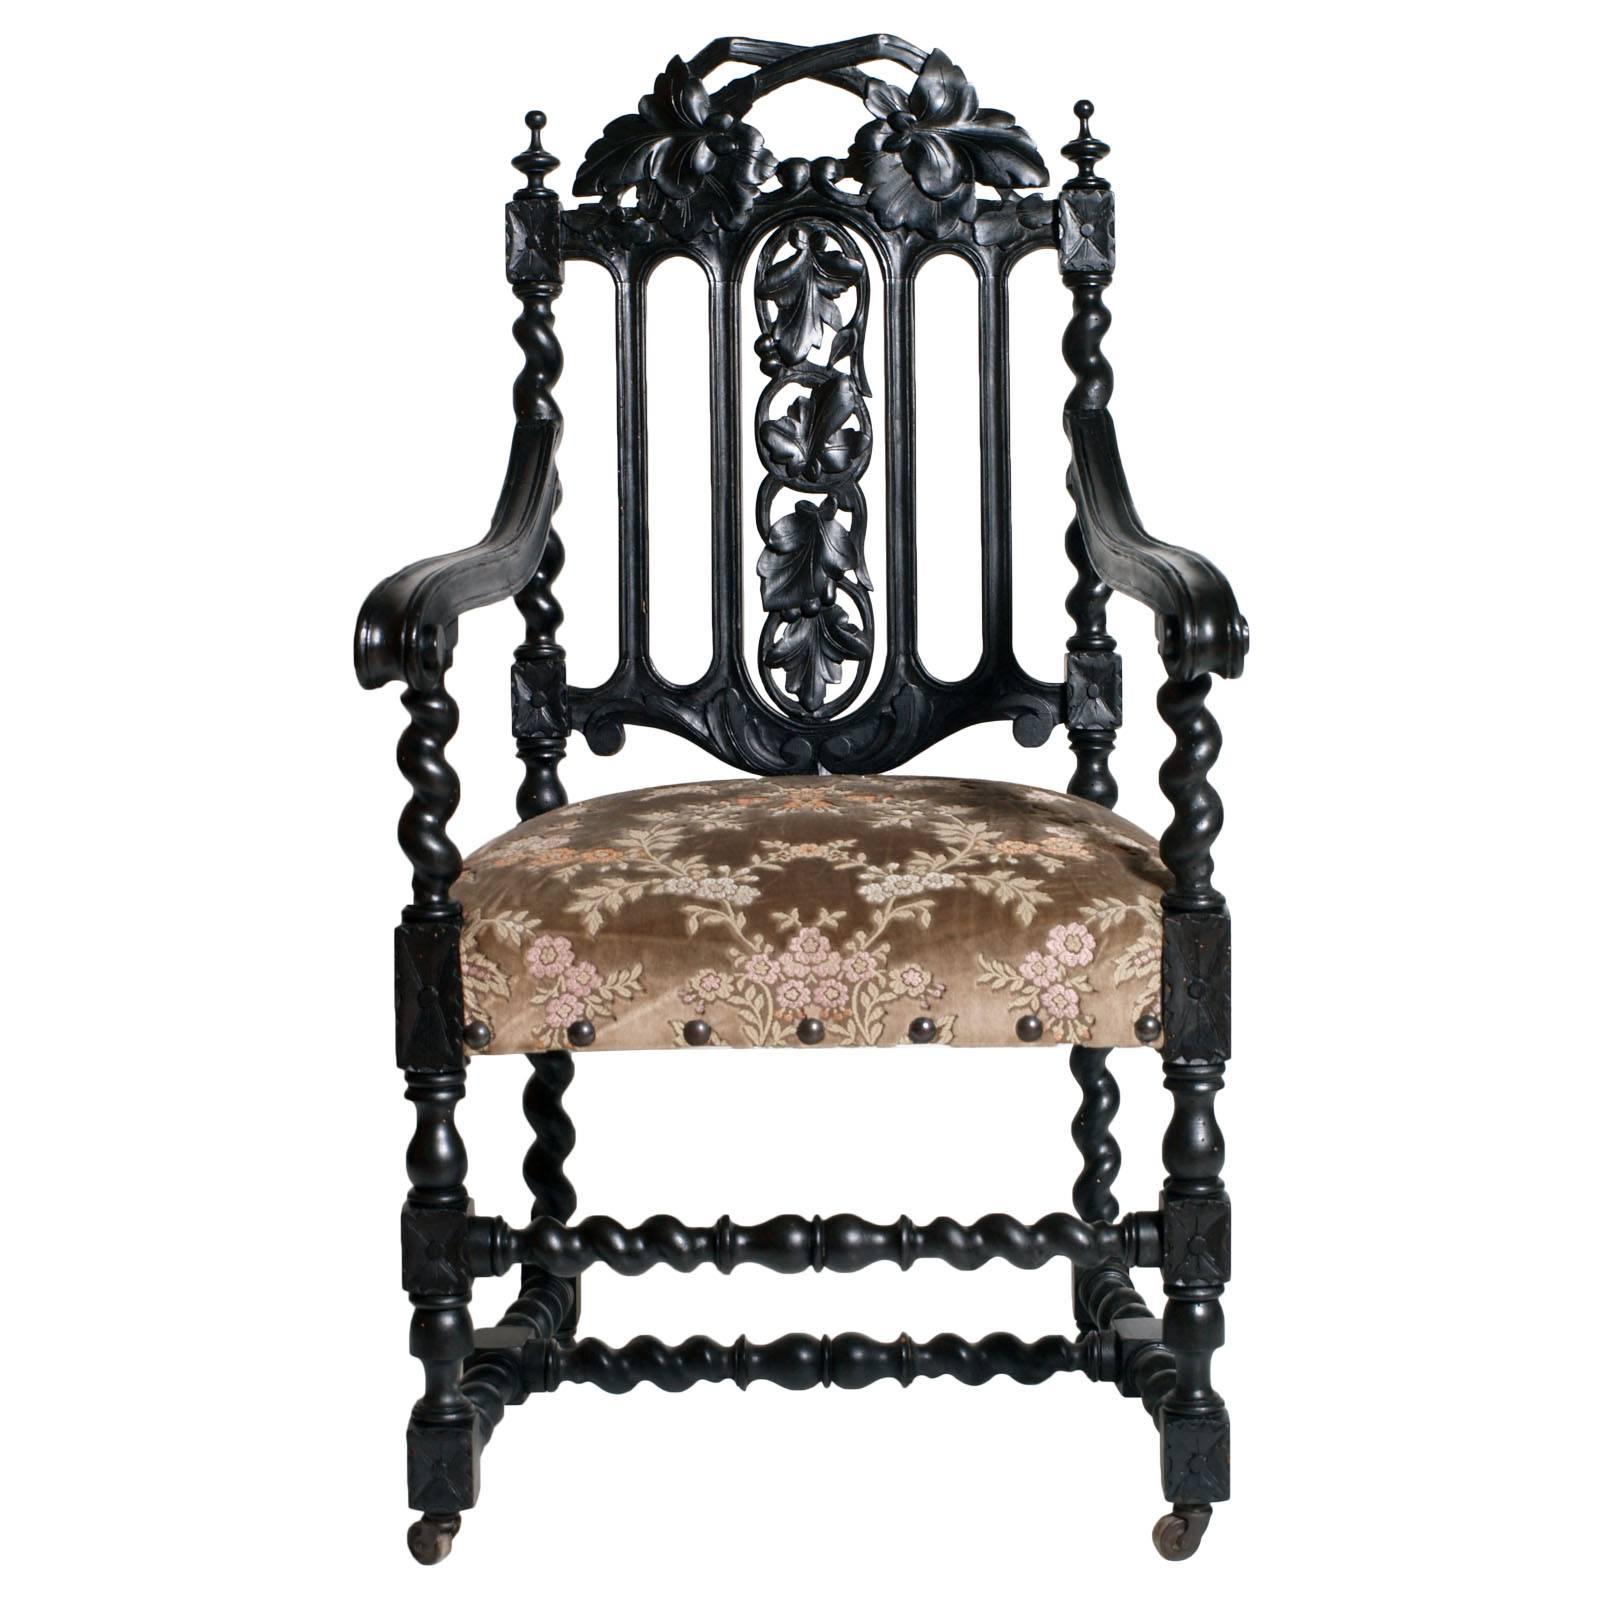 Importante vénitienne baroque ébénisée  fauteuil, vers 1780 Fratelli Mora.
Produit par Fratelli Mora à Bergame, usine établie en 1778. À cette époque, la production principale était assurée par l'aristocratie vénitienne, Bergame étant une ville